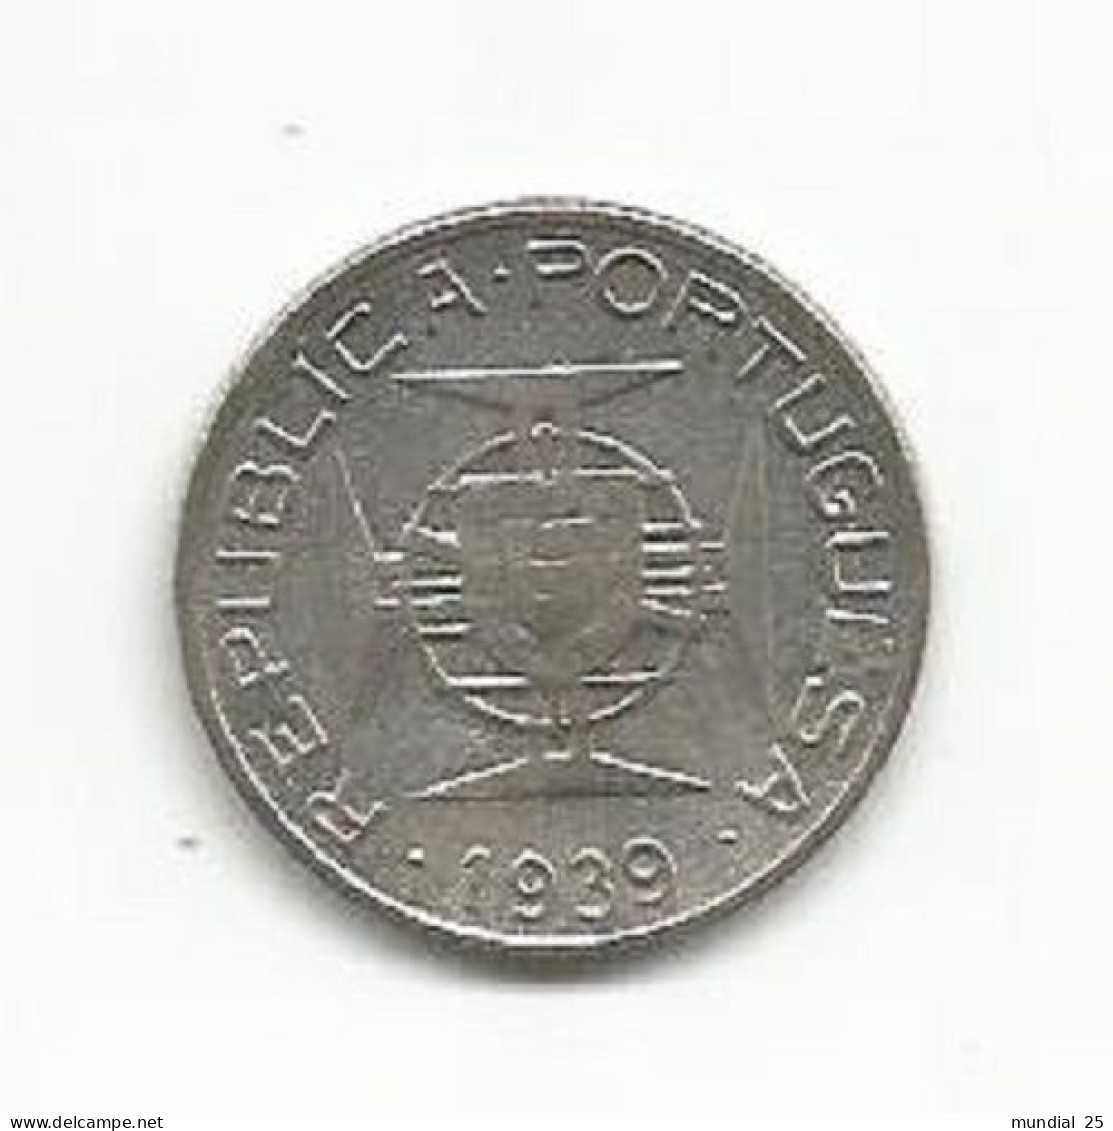 SAO TOME AND PRINCIPE PORTUGAL 2$50 ESCUDOS 1939 SILVER - Sao Tome And Principe